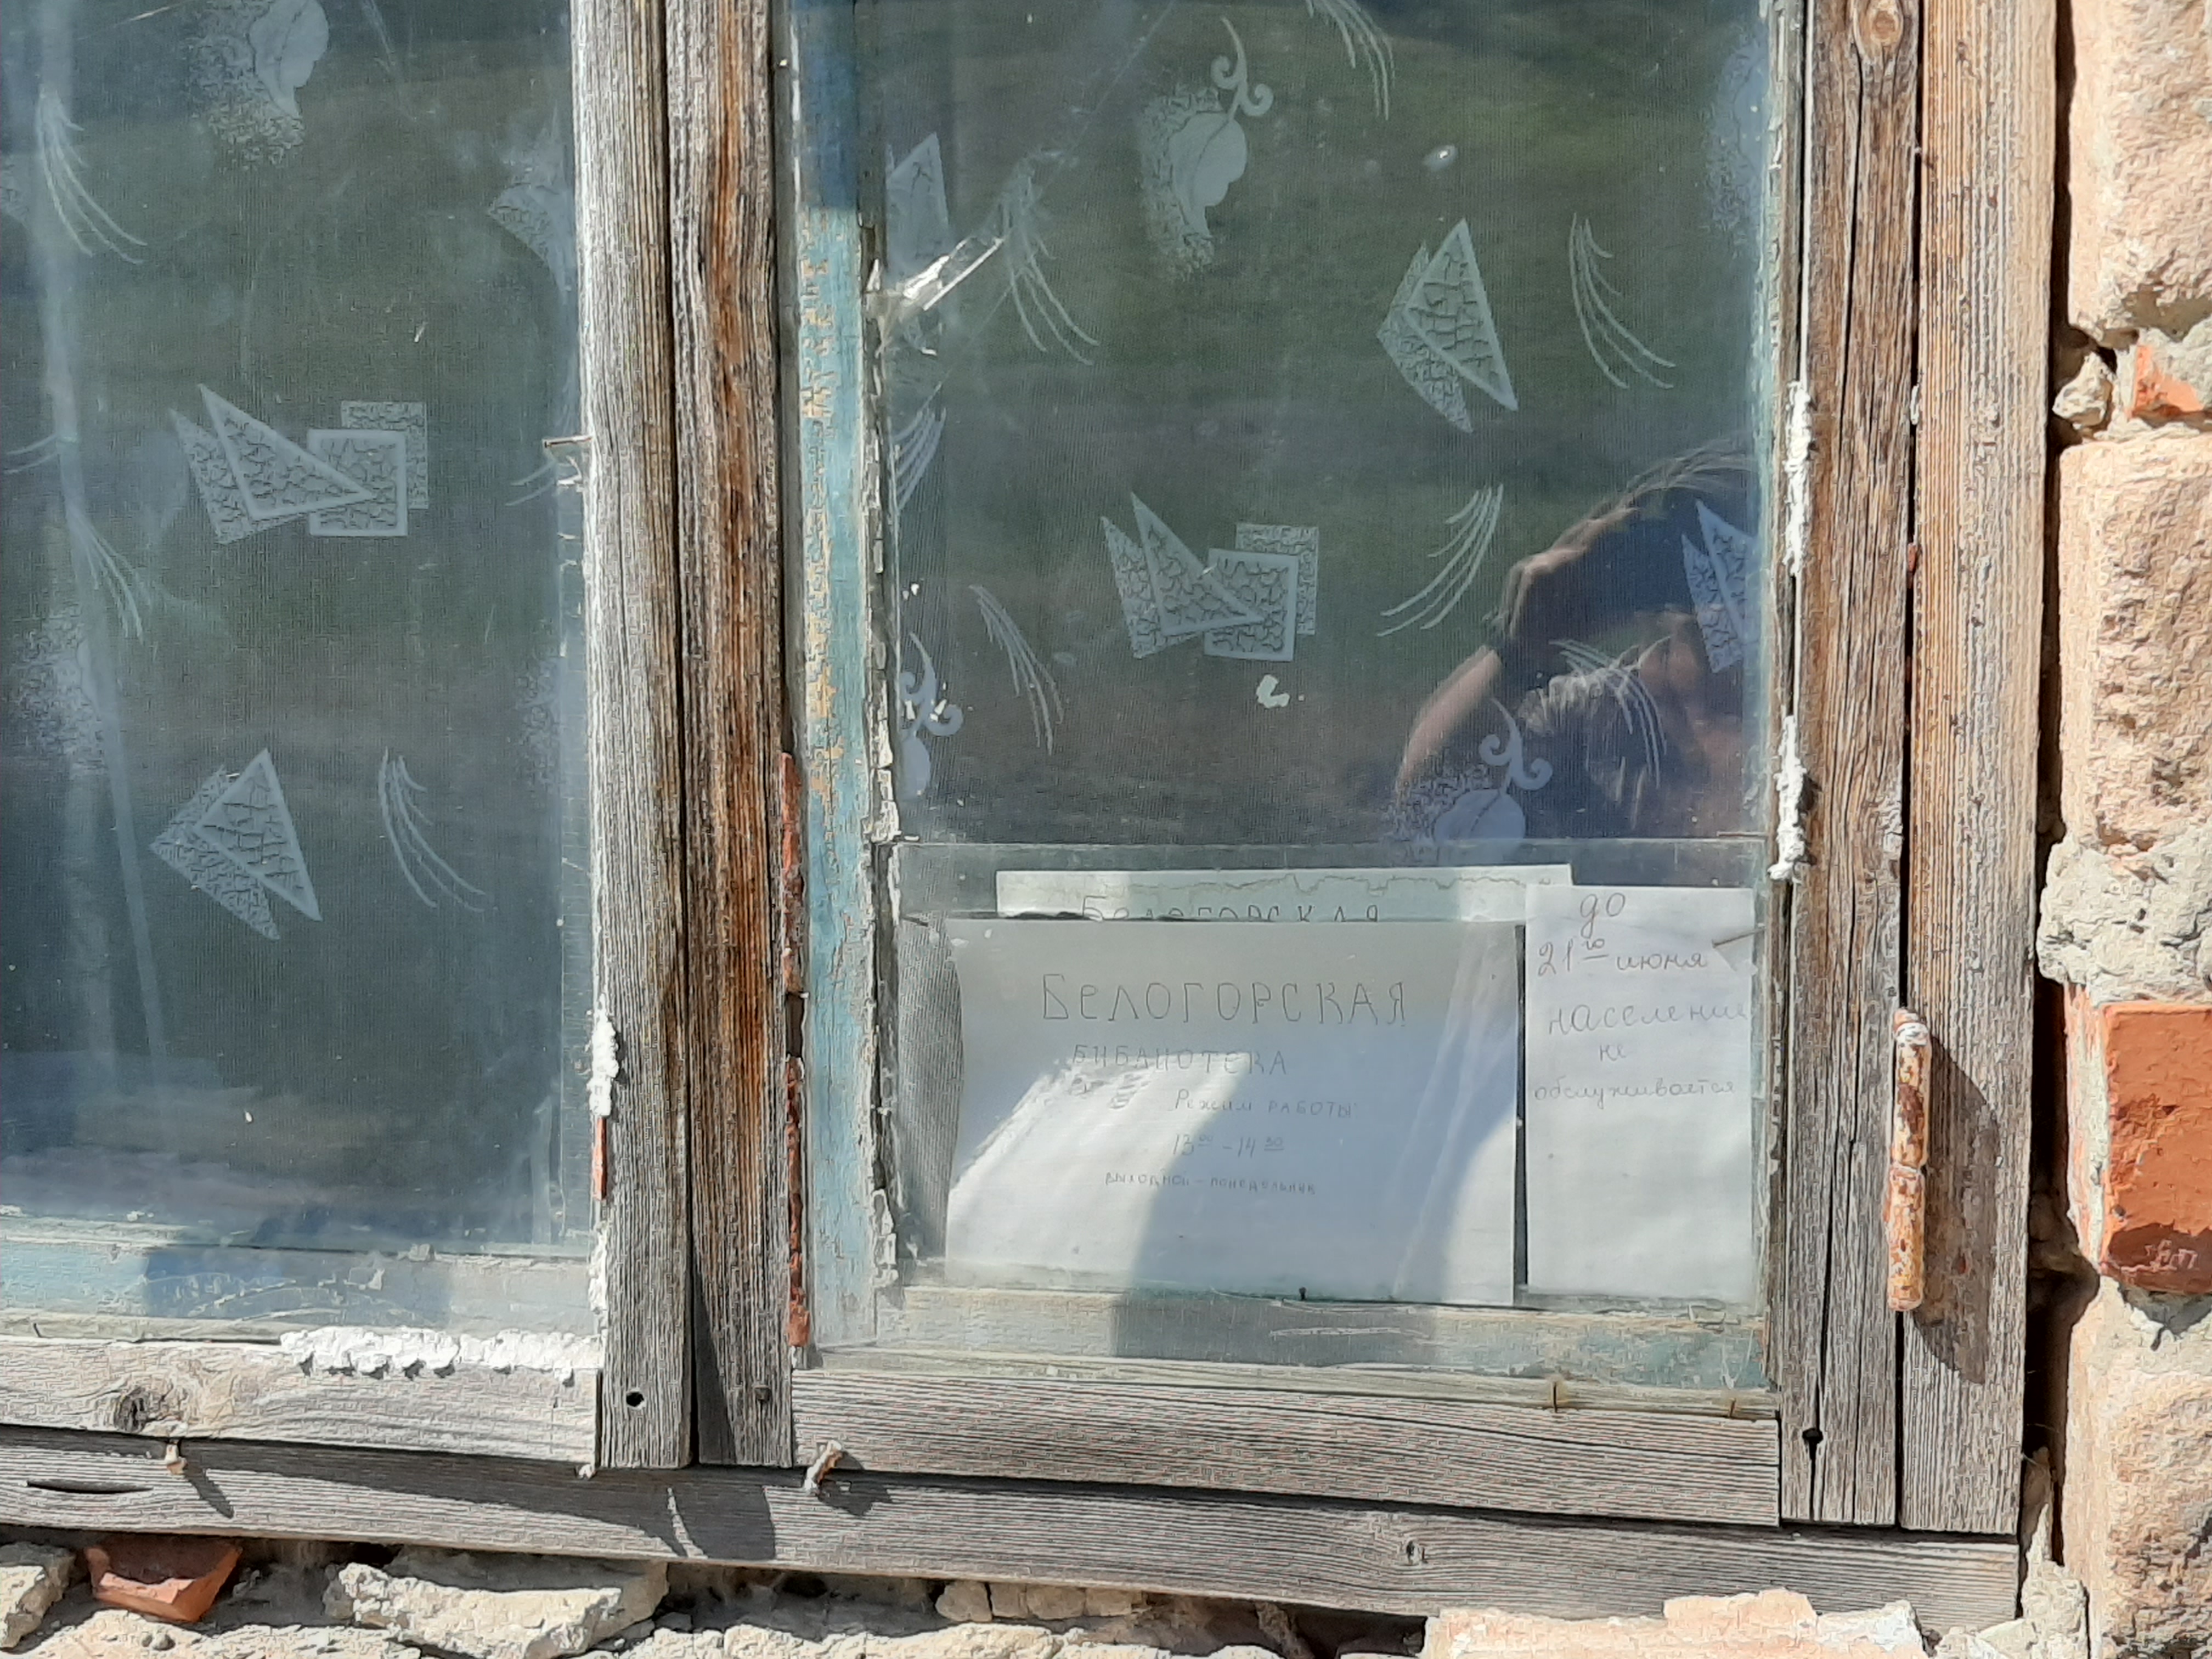 Окно сельской библиотеки. Библиотека закрыта в связи с карантином коронавируса